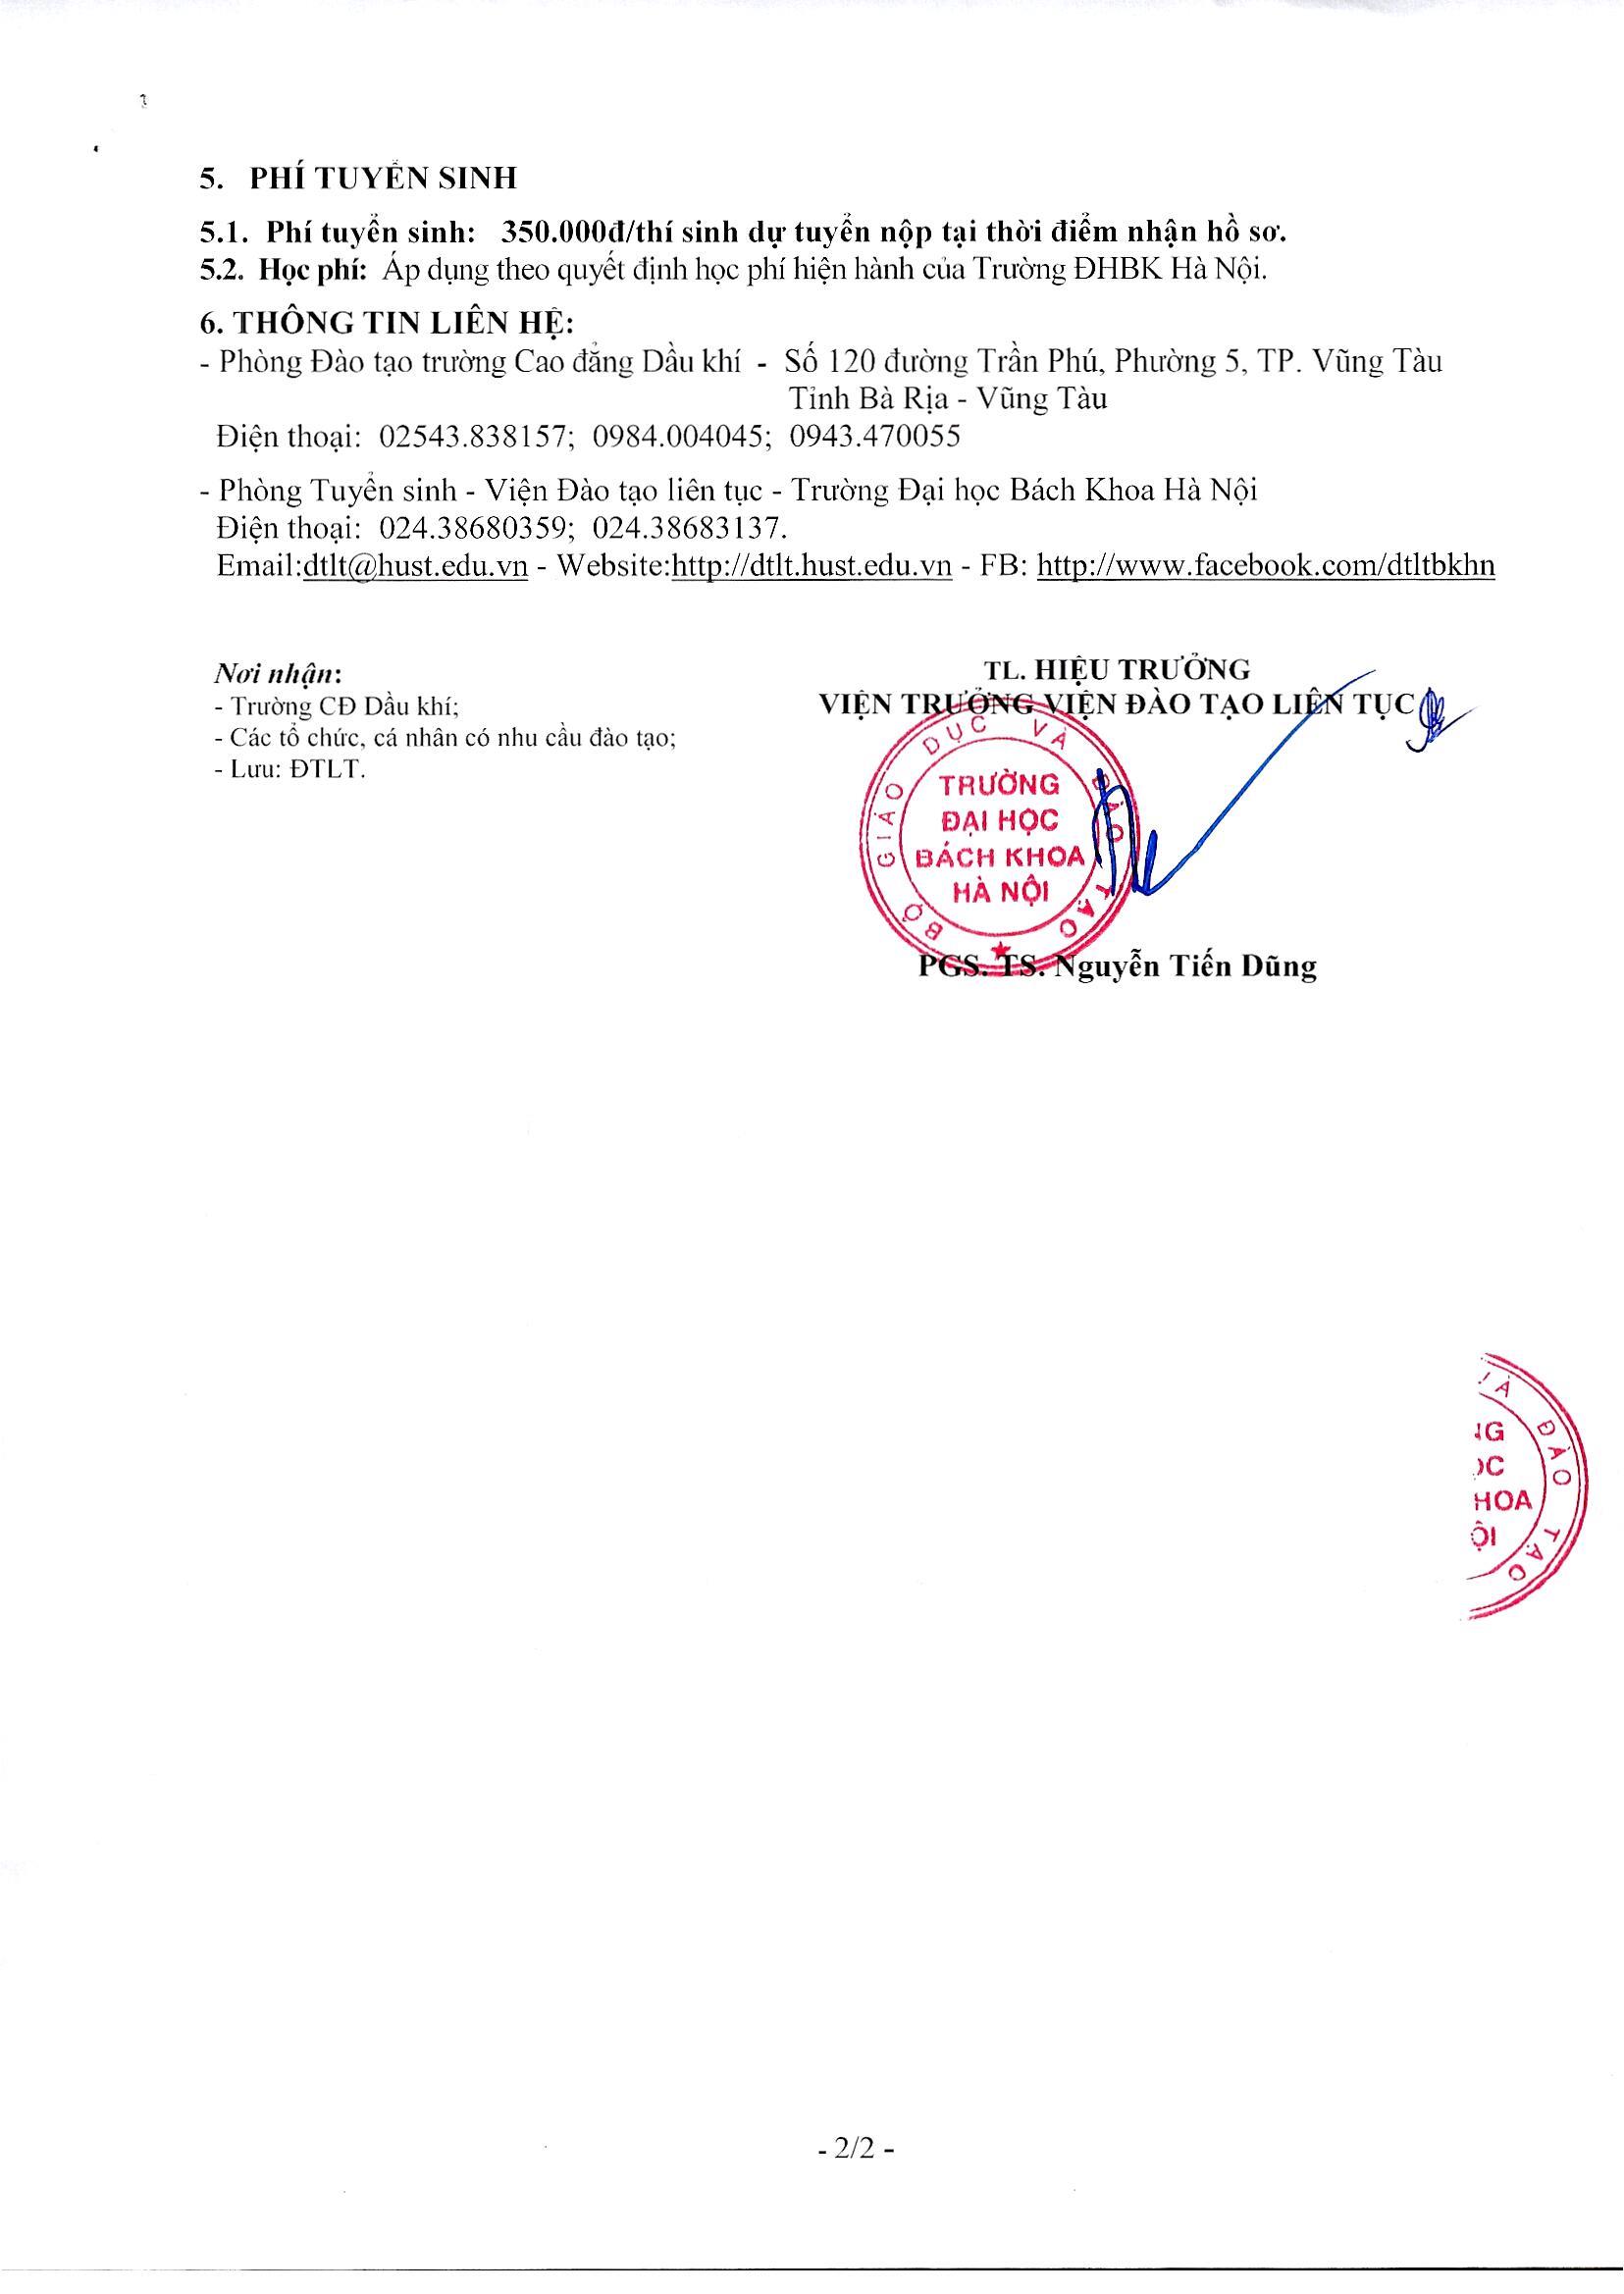 Thong Bao Tuyen Sinh Lien Thong Dhbkhn 2021 Tai Pvmtc Page 2 Image 0001